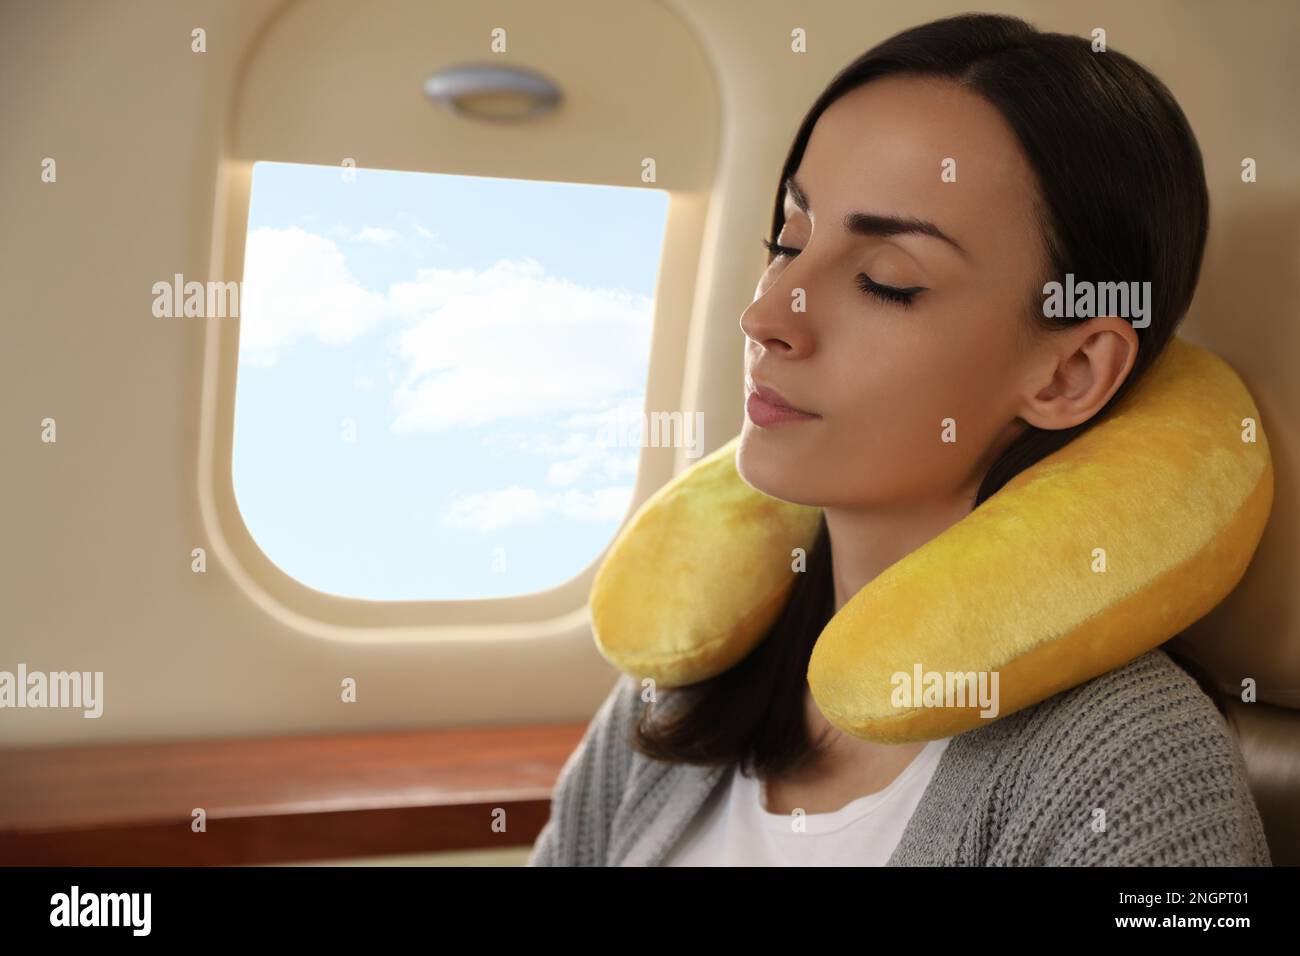 Una signora di dormire su un passeggero aereo usando un cuscino di collo  Foto stock - Alamy